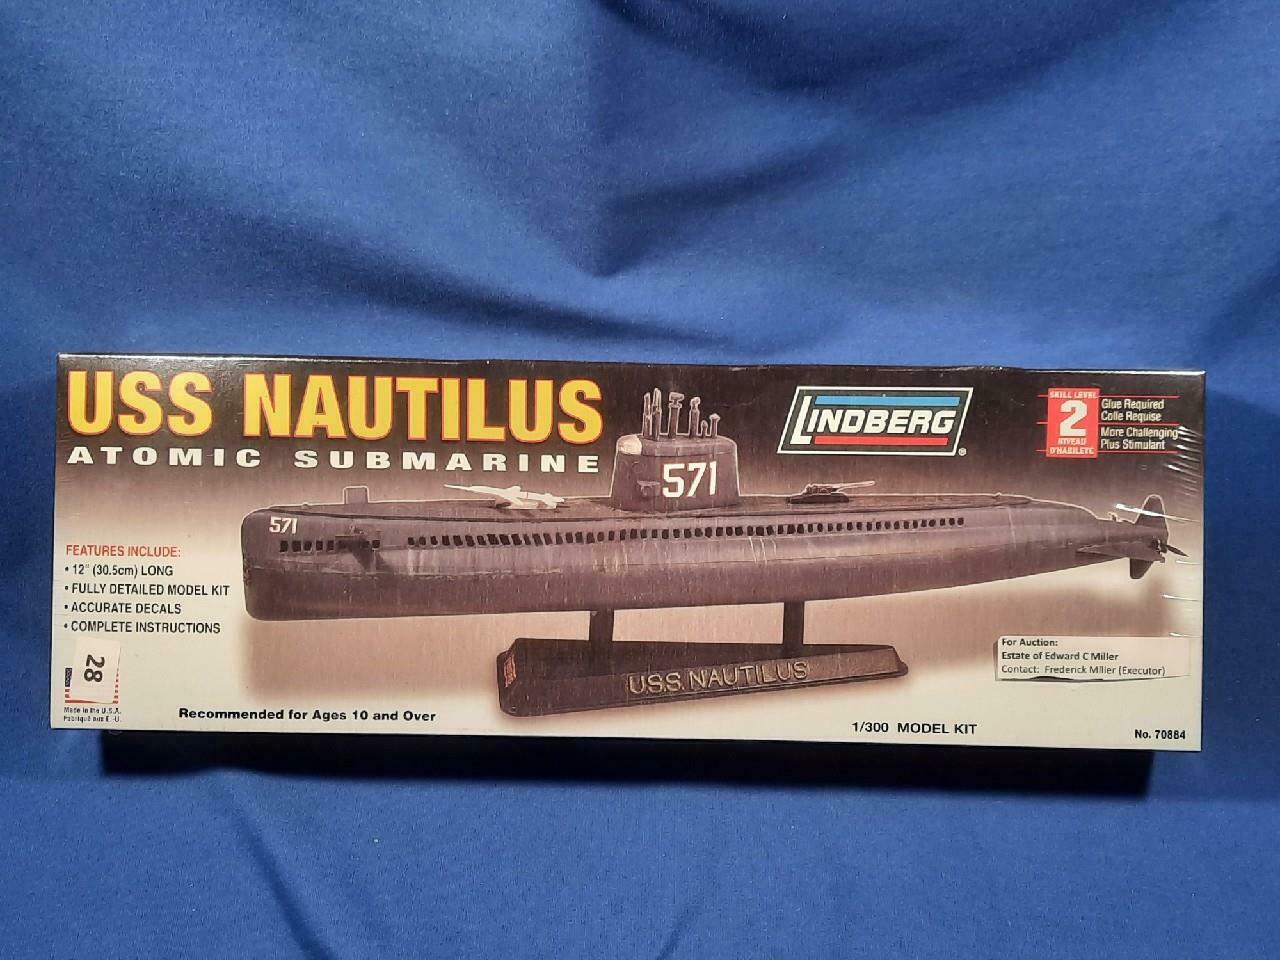 Lindberg Uss Nautilus Atomic Submarine Model Kit #70884, Scale 1/300, Sealed!